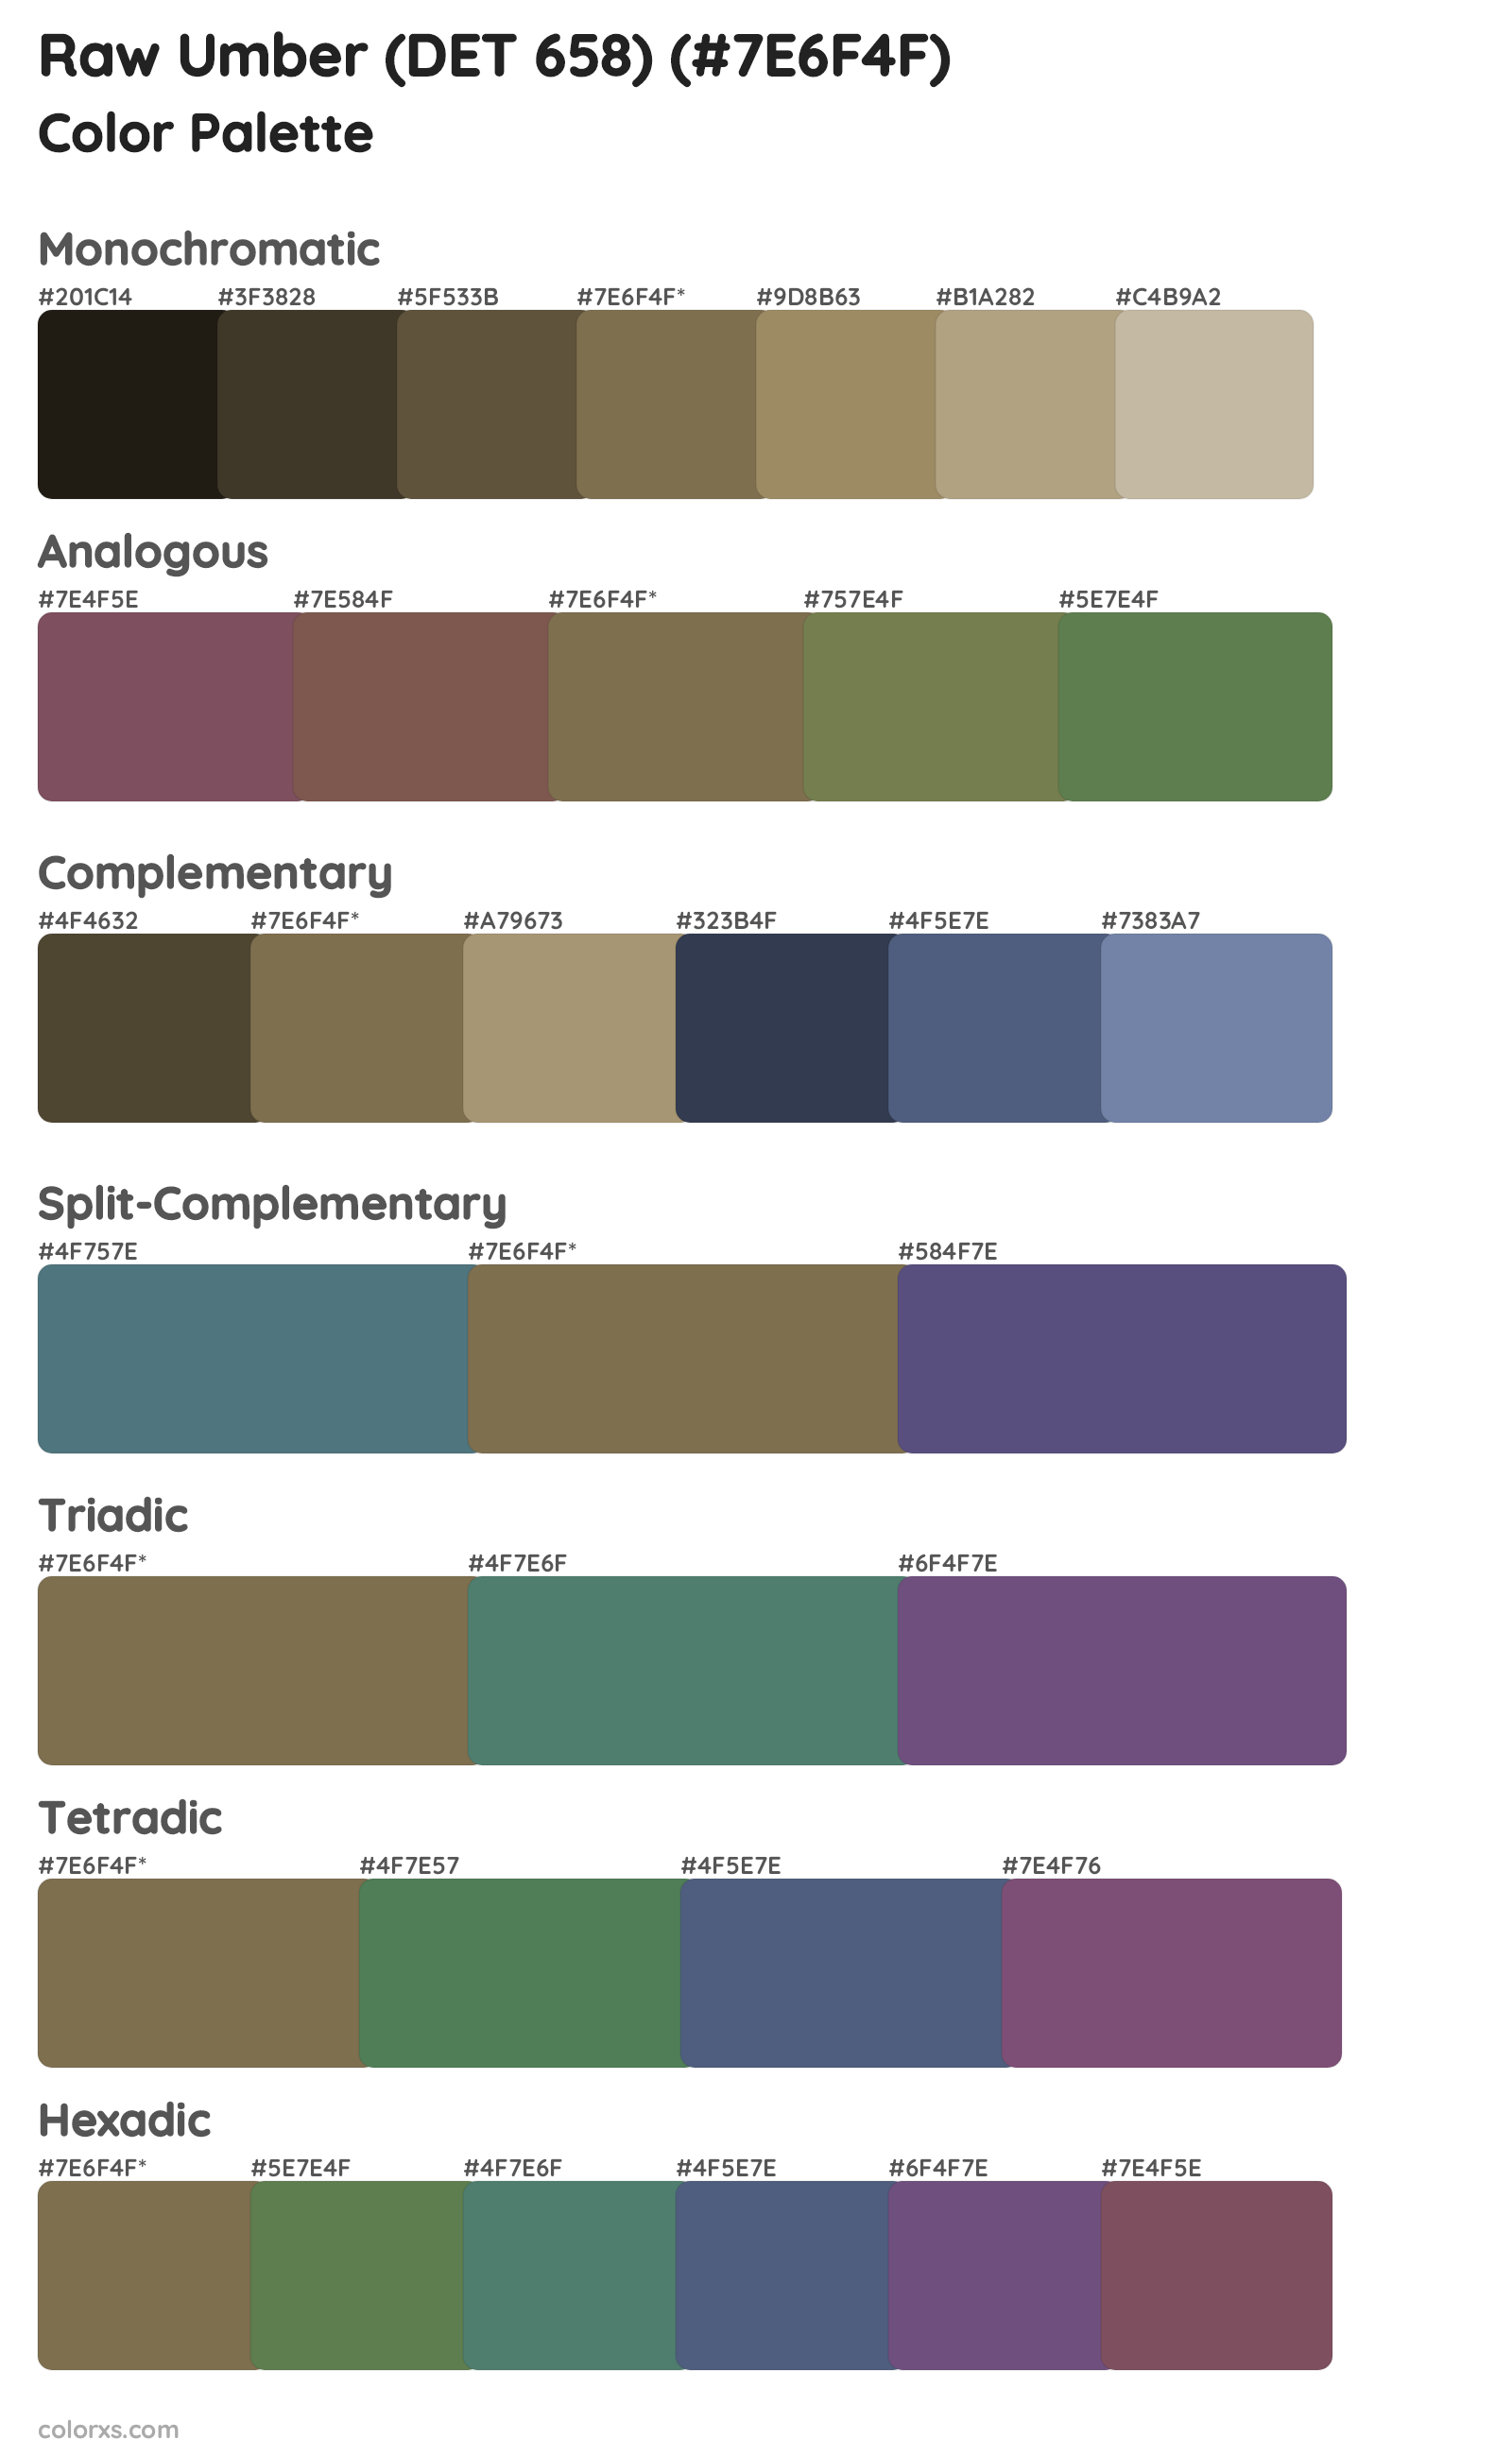 Raw Umber (DET 658) Color Scheme Palettes